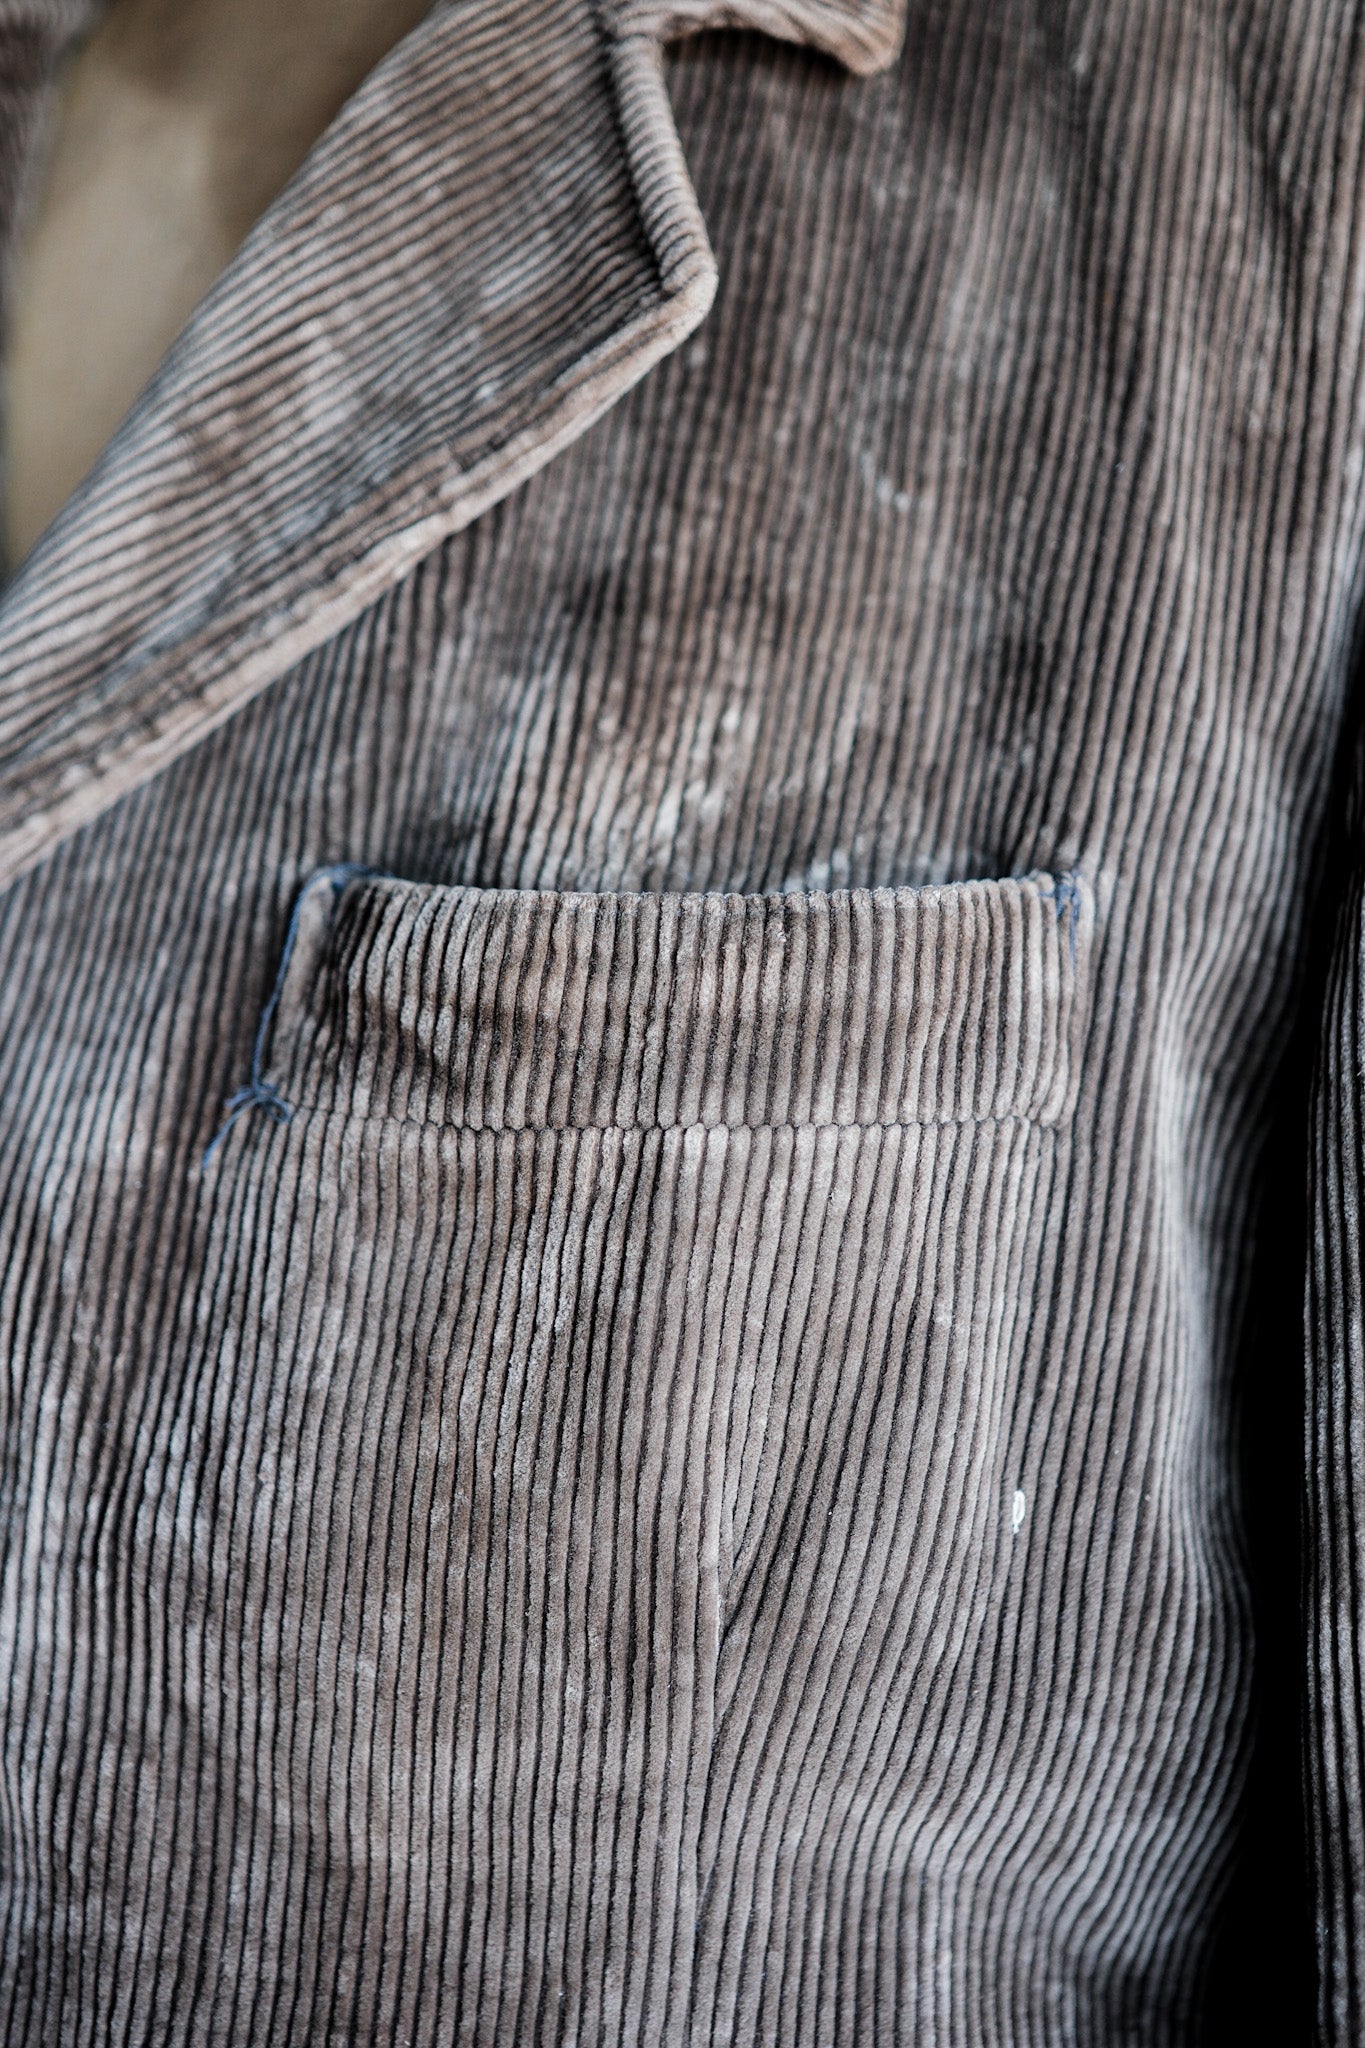 [~ 40 '] 프랑스 빈티지 브라운 코듀로이 옷깃 재킷